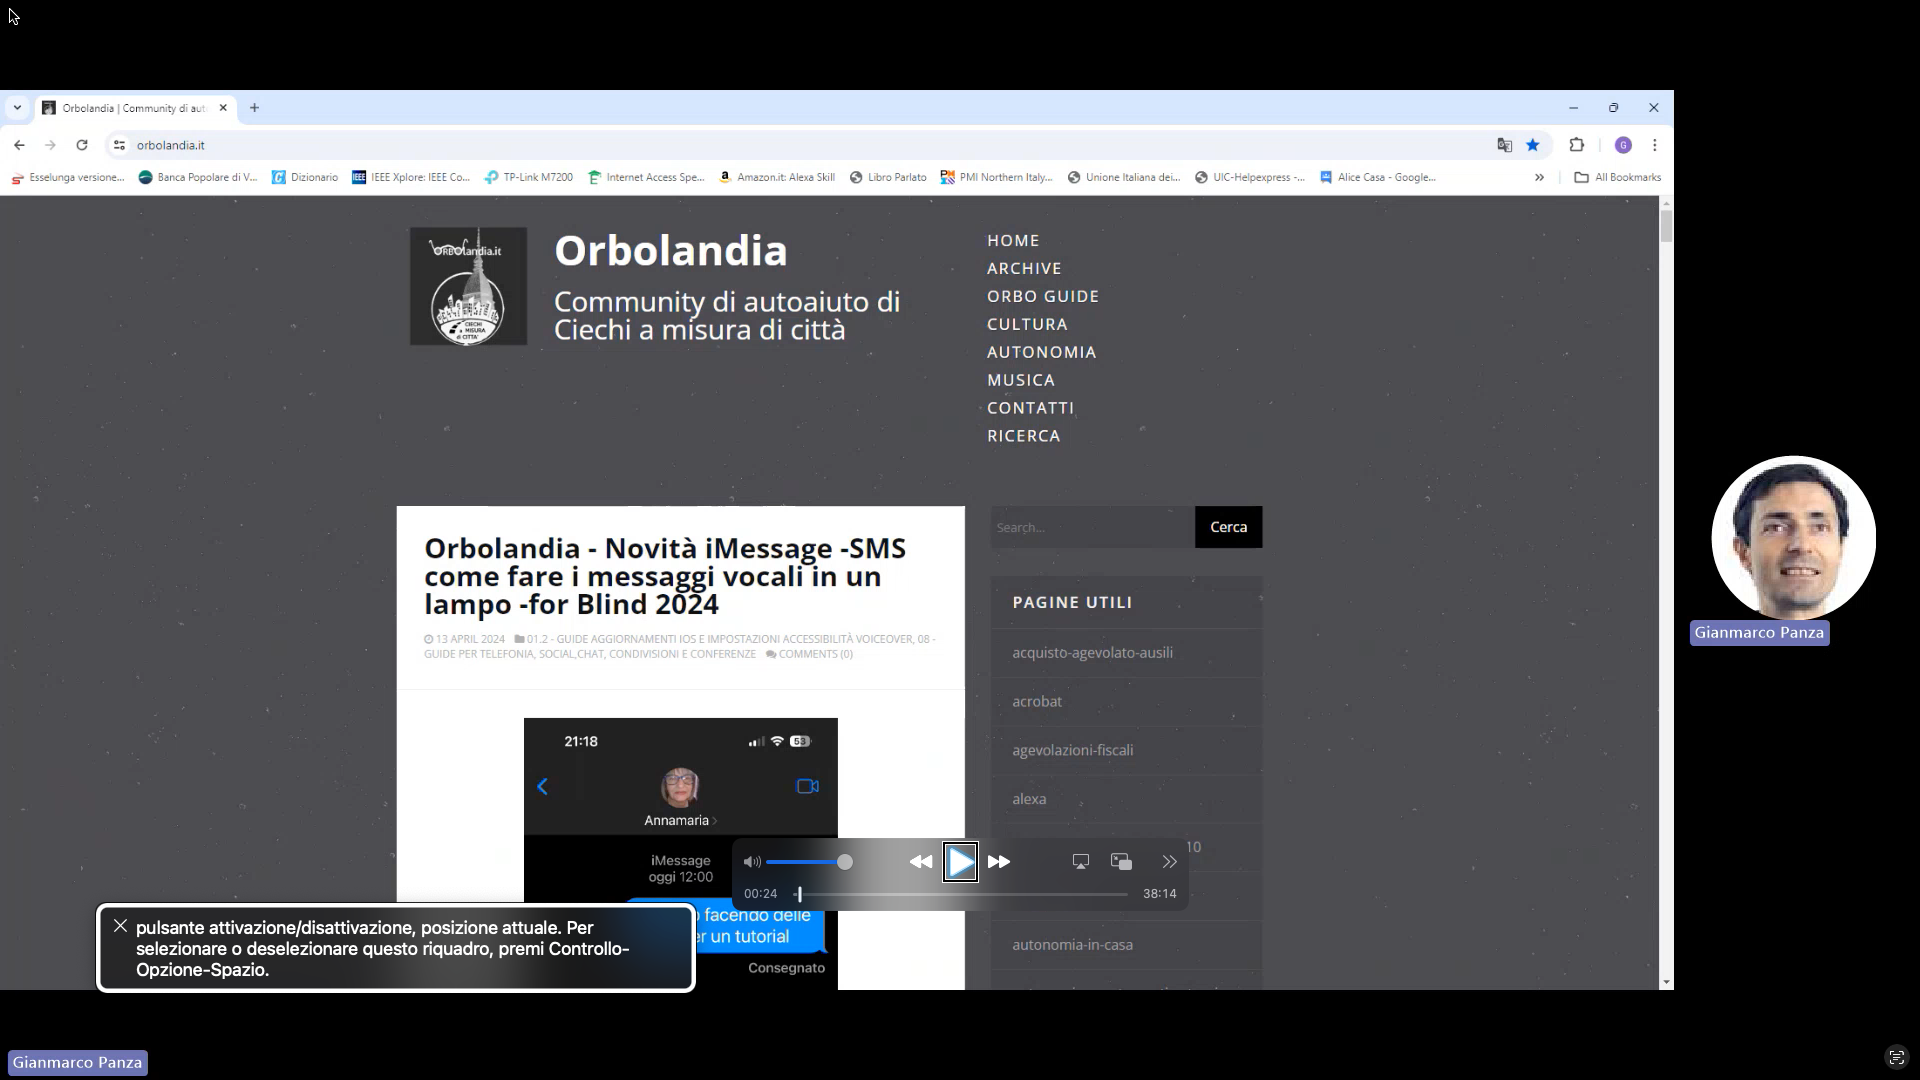 nell’immagine uno screenshot del computer Windows aperto sulla pagina di Orbolandia